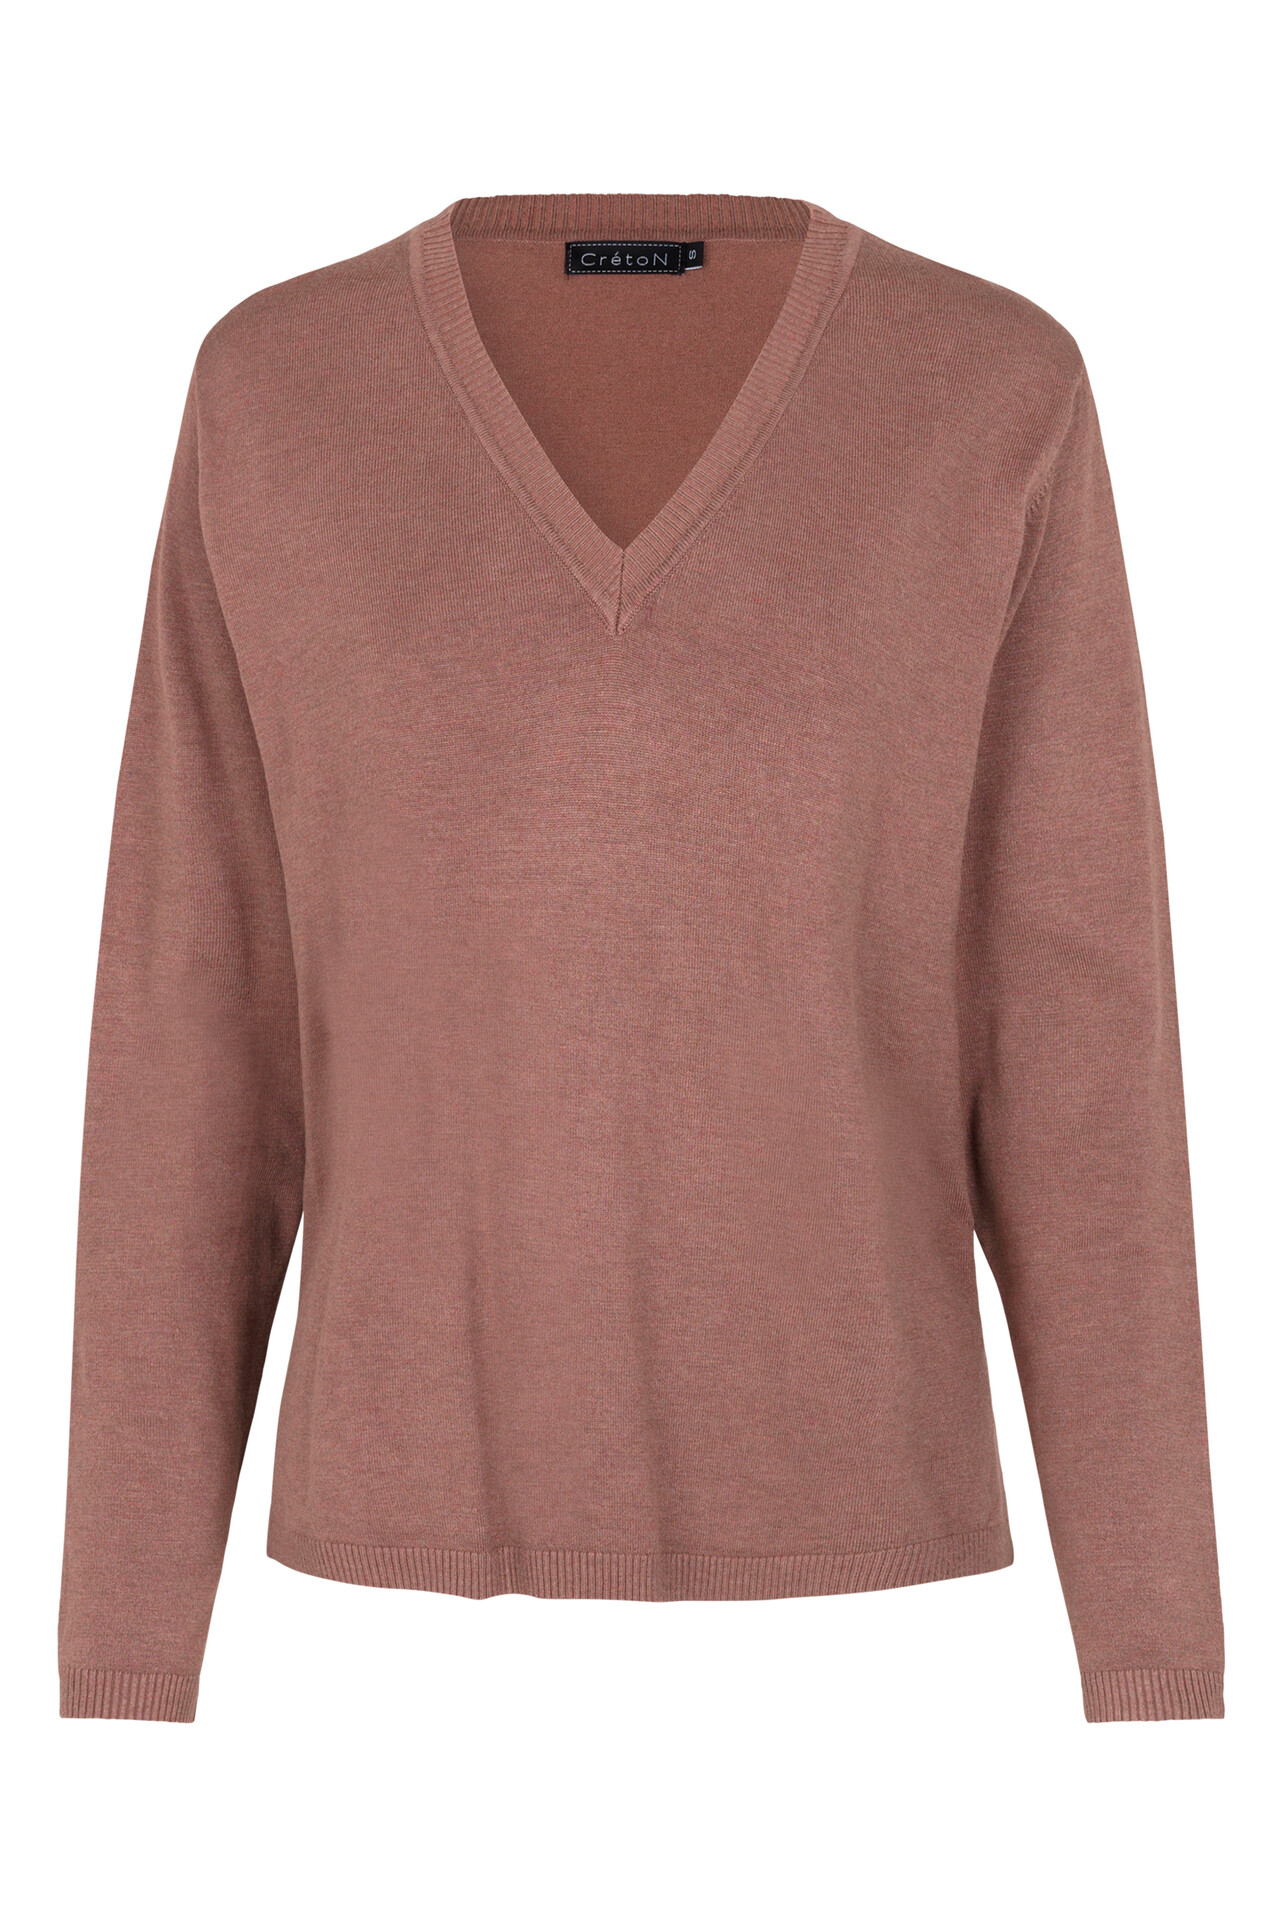 CRÉTON Wicky v-hals sweater (ROSA L)